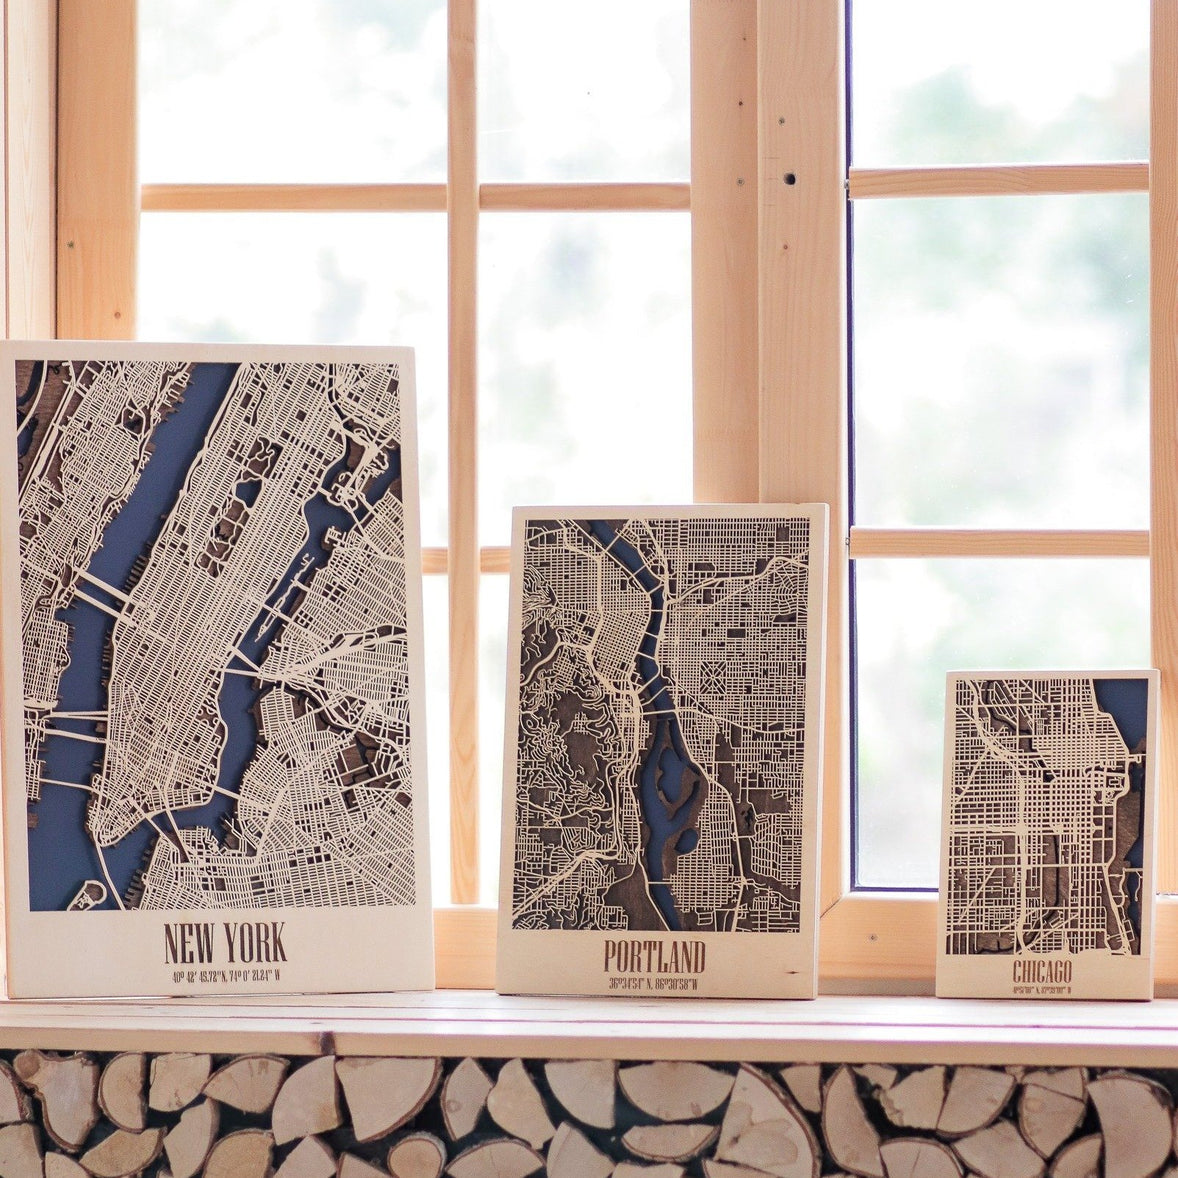 【選べる21都市】3D Wood City Map インテリア用木製都市マップ 【10月末頃お届け予定】